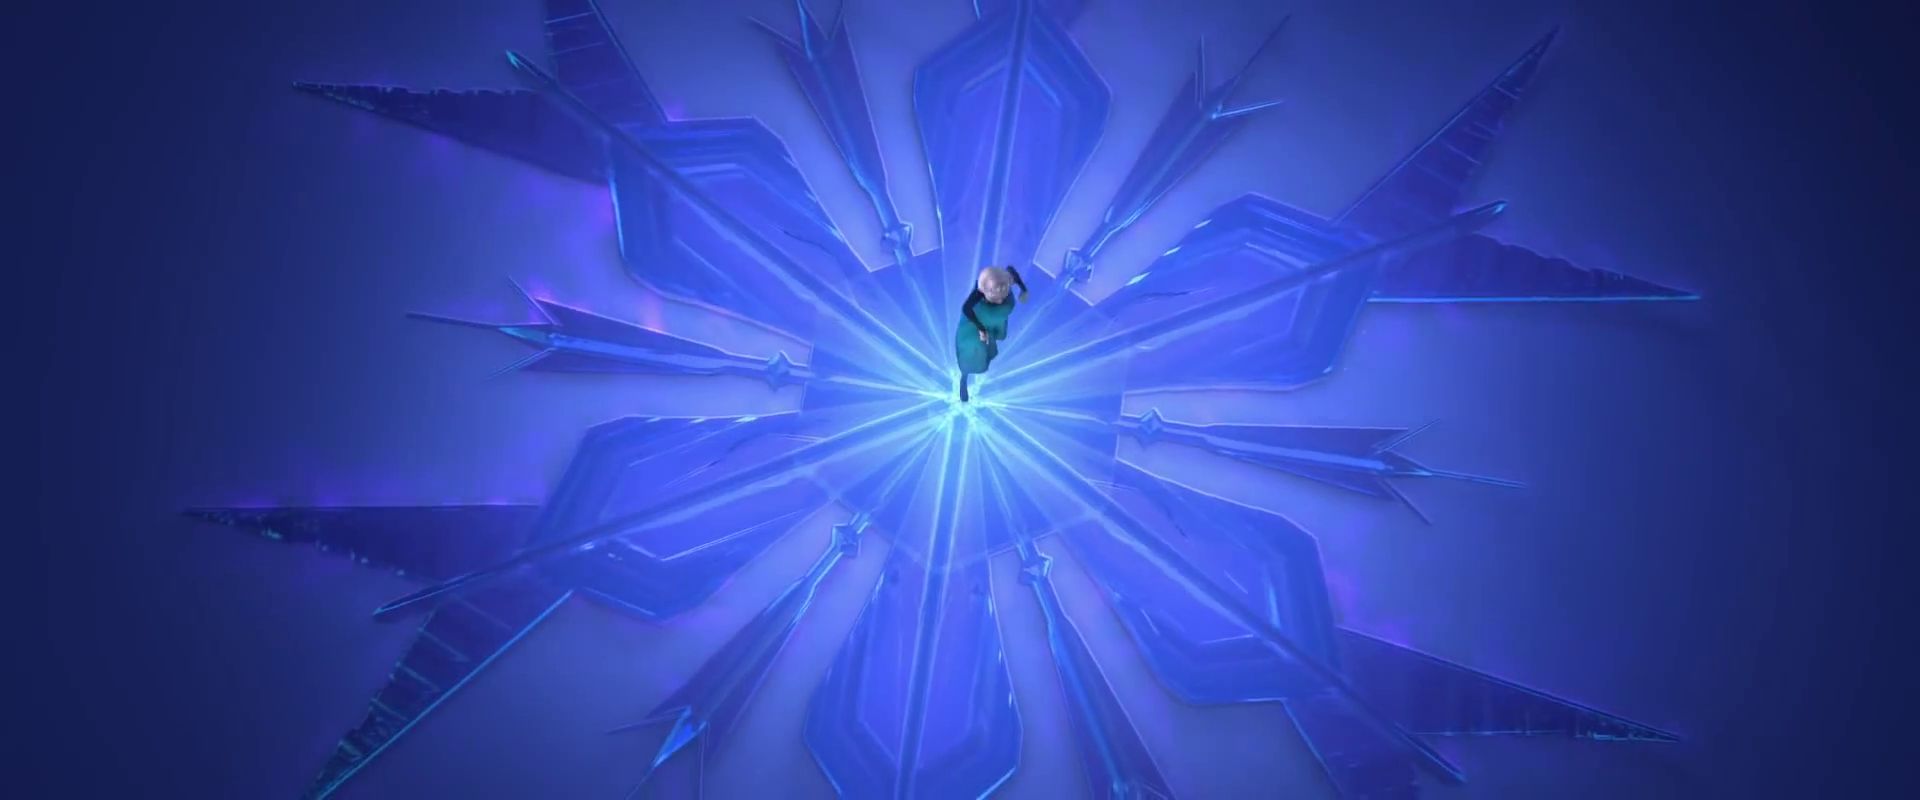 Descarga gratuita de fondo de pantalla para móvil de Películas, Frozen: El Reino Del Hielo, Congelado (Película), Elsa (Congelada).